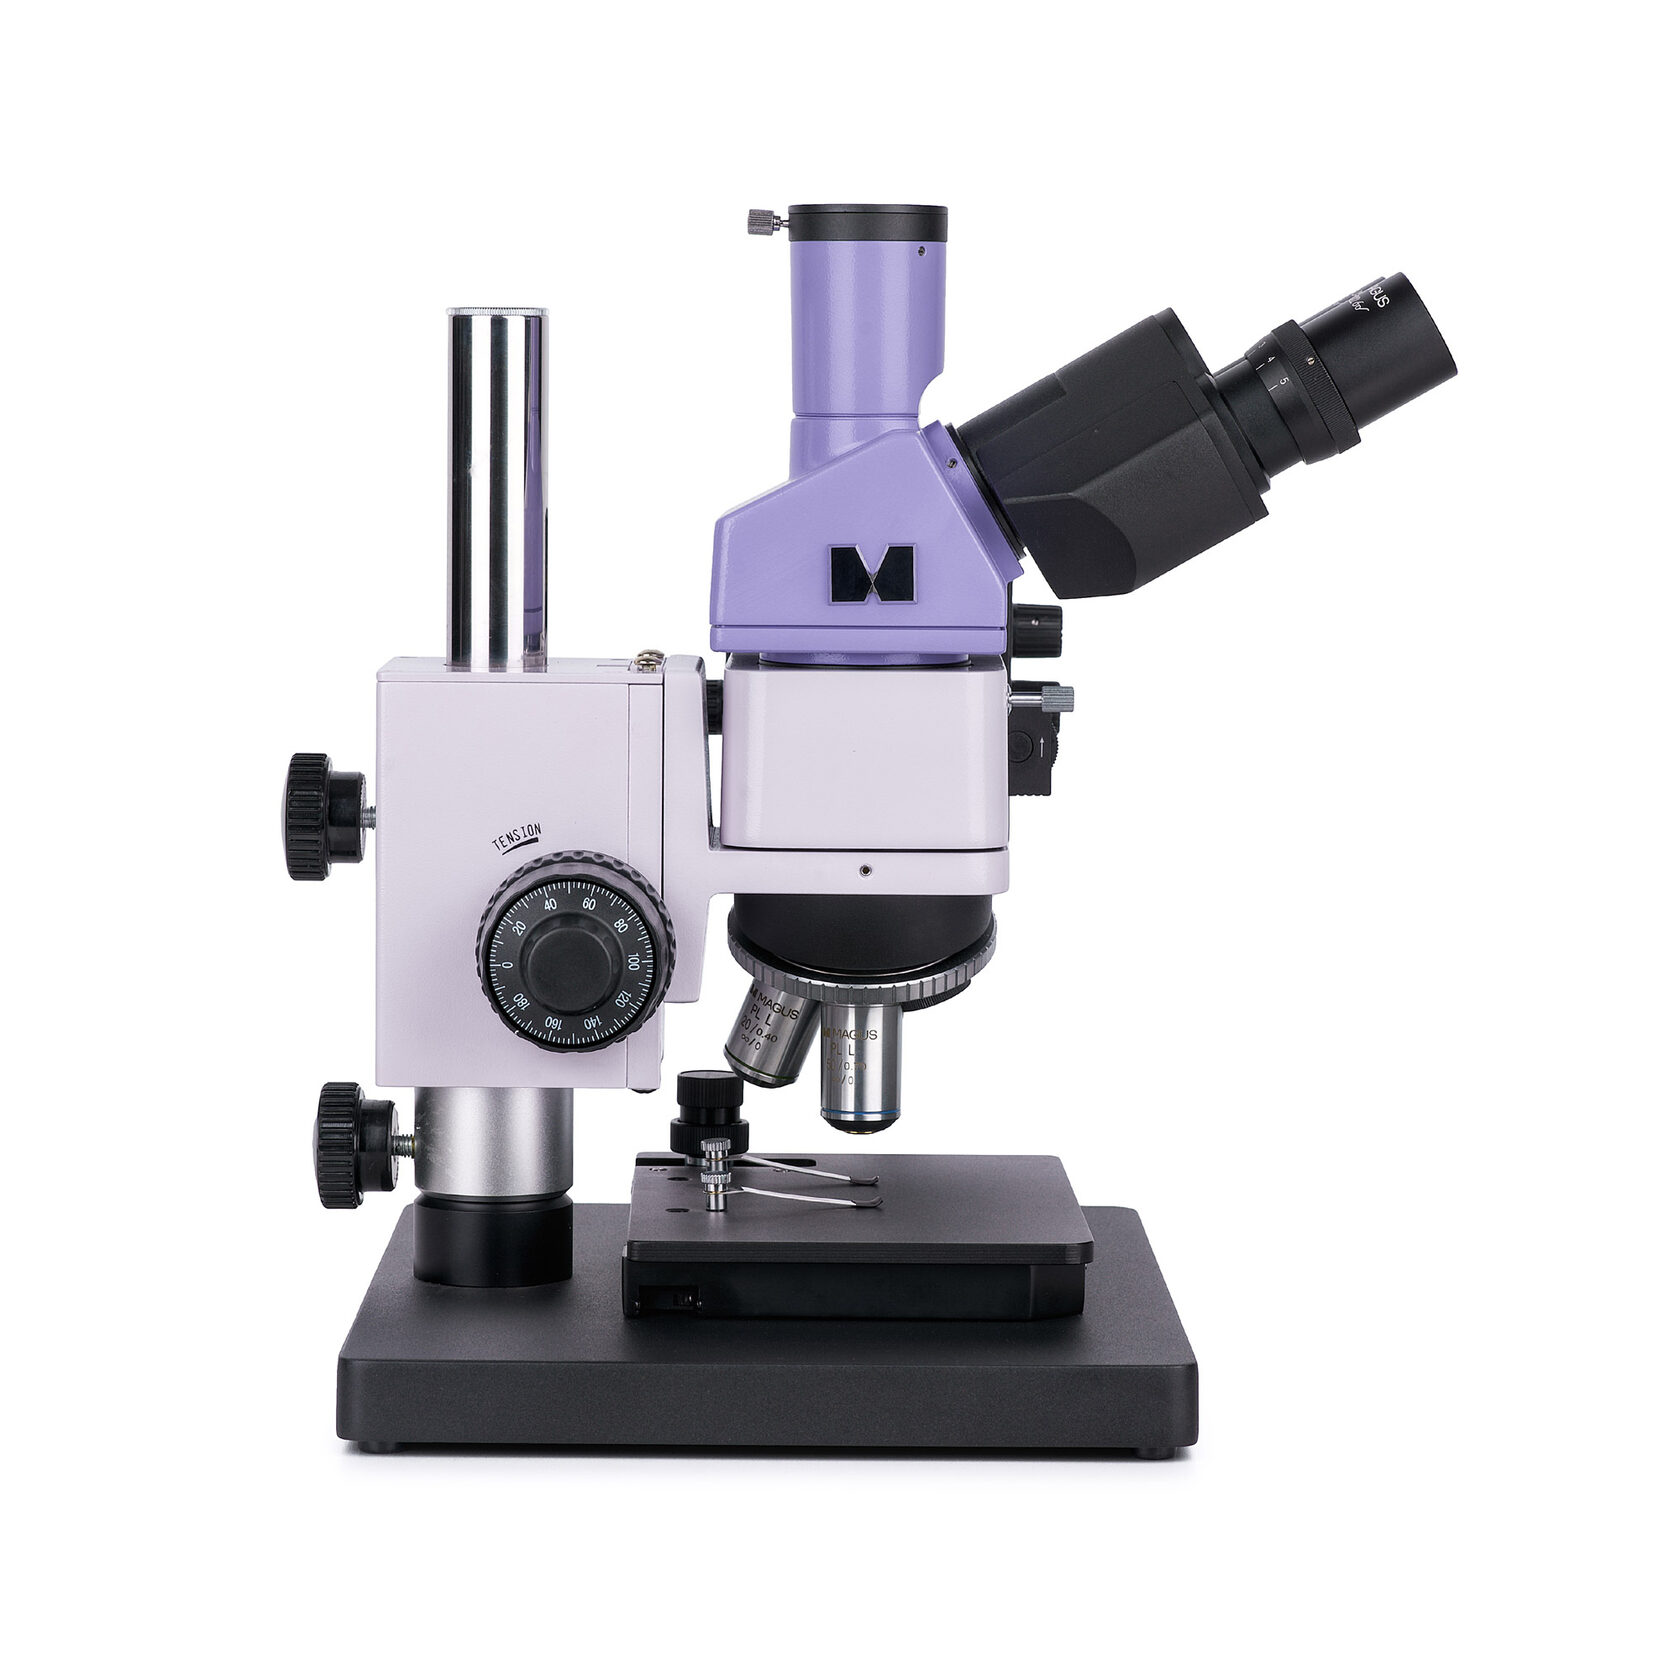 Металлографический микроскоп MAGUS Metal 630